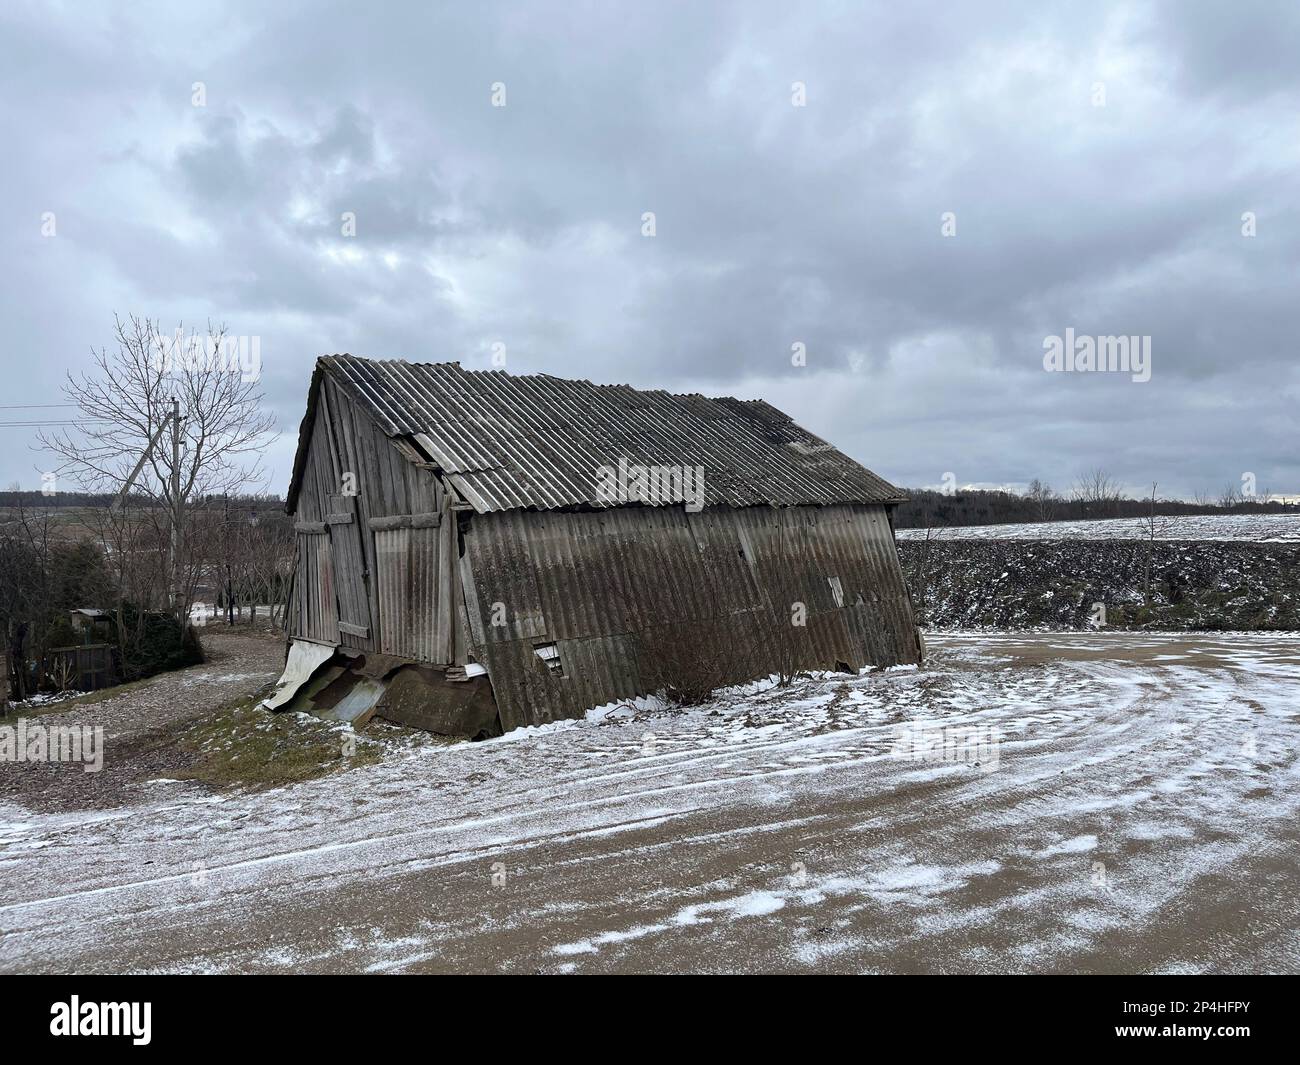 Vecchio fienile di ferro corrugato. Klaipeda regione lituano nella neve. Immagine : garyroberts/worldwidefeatures.com Foto Stock